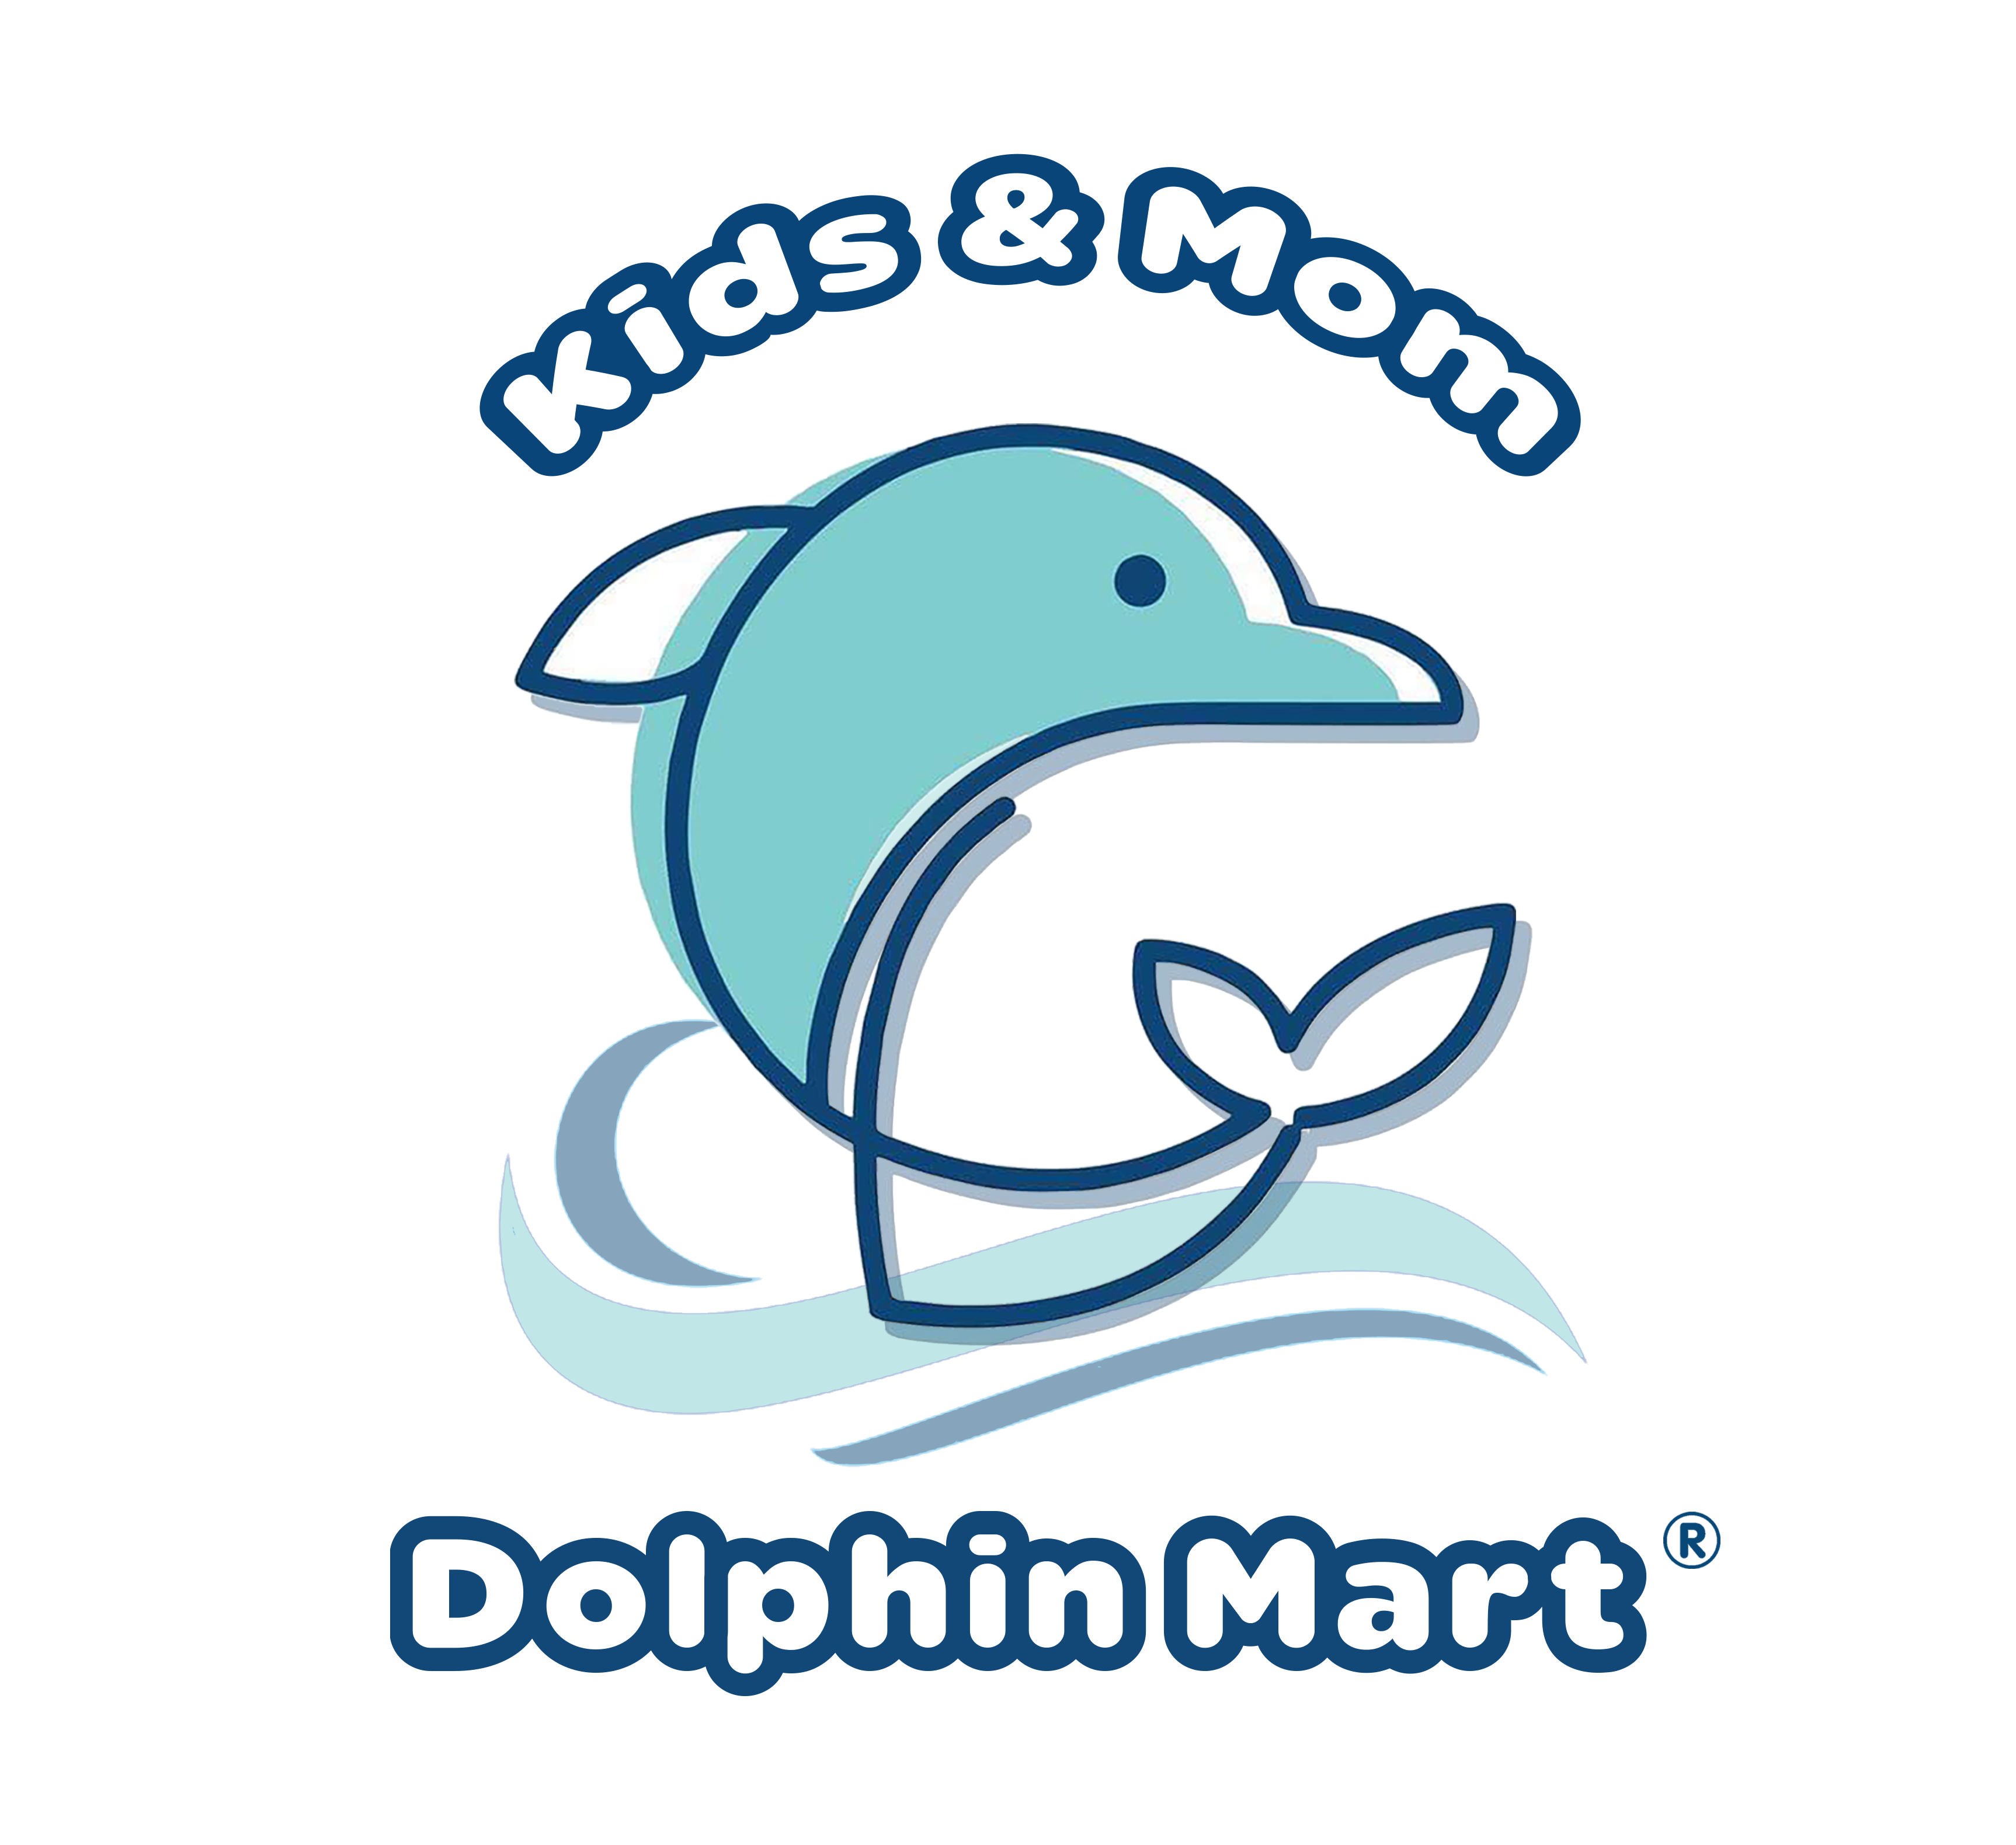 Dolphin Mart